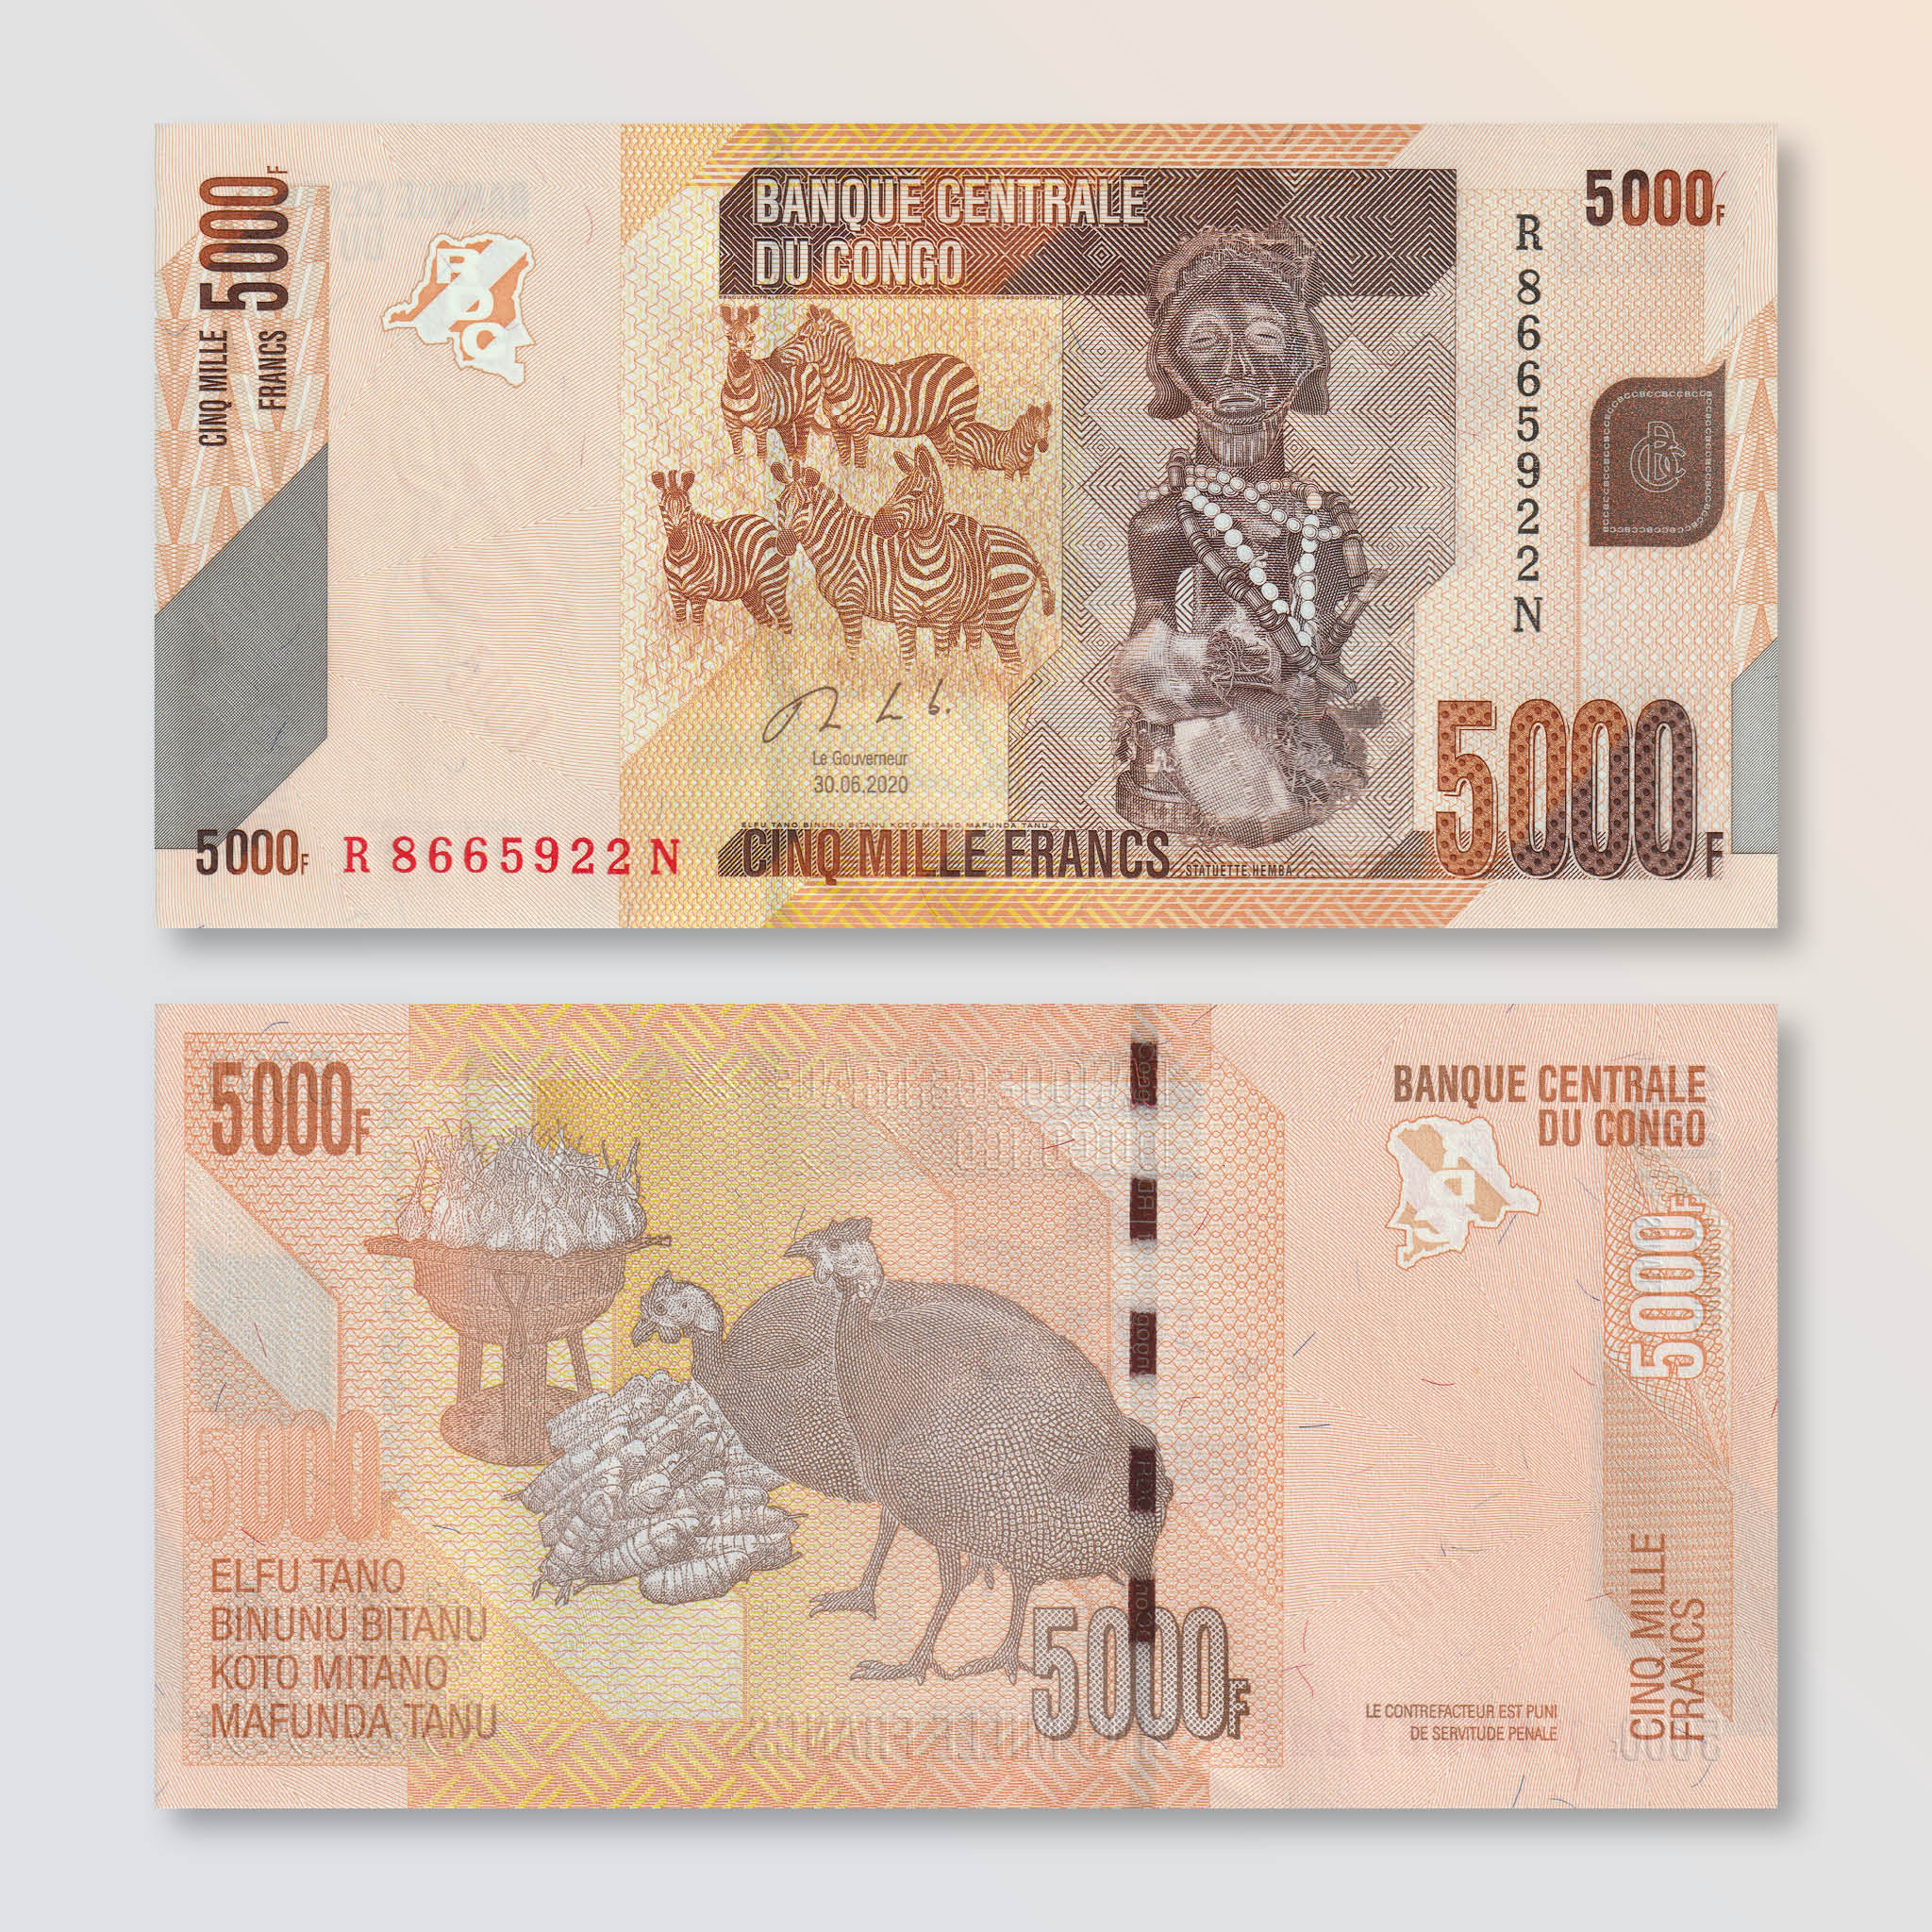 Congo Democratic Republic 5000 Francs, 2020, B324c, P102, UNC - Robert's World Money - World Banknotes